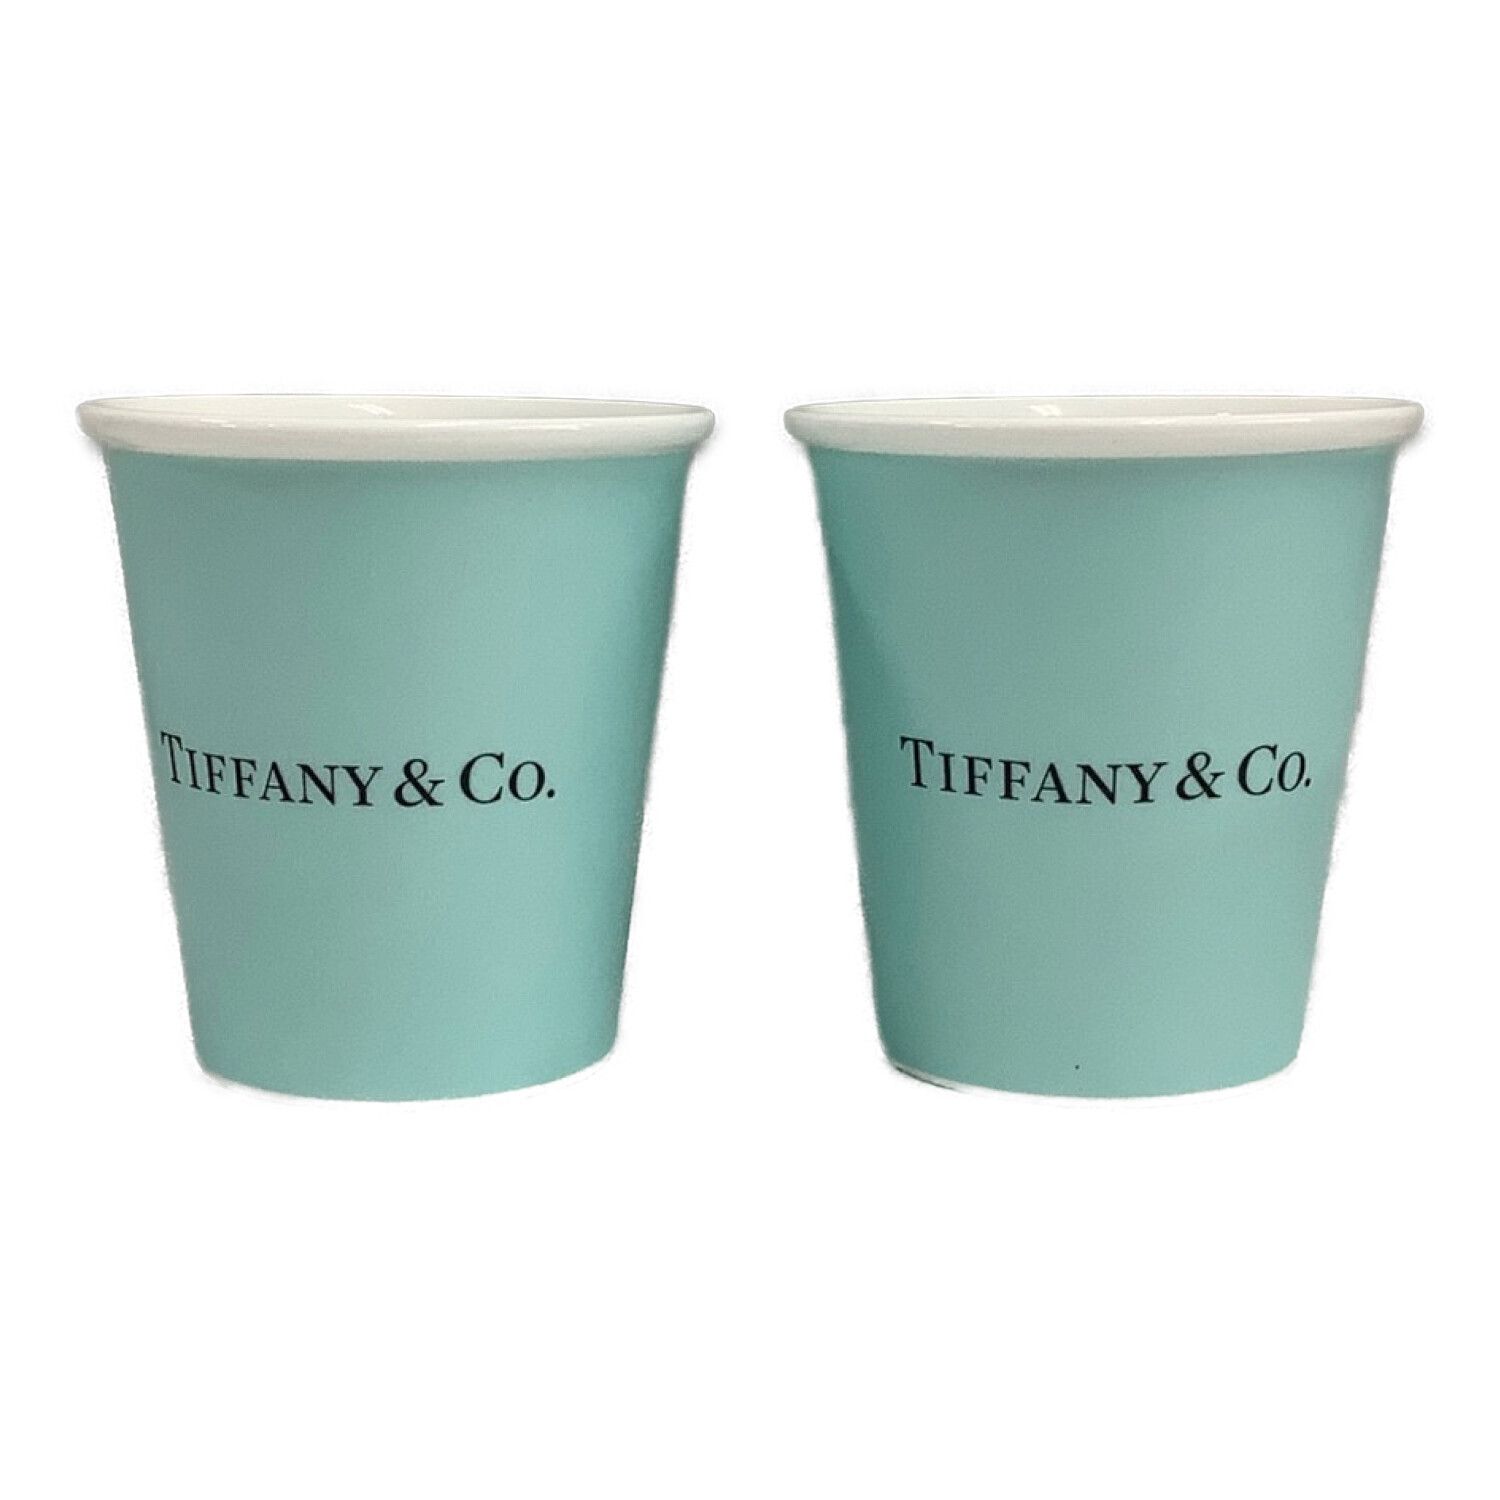 Tiffany & Co. ペアグラス エブリデイオブジェクトペーパーカップ 2P